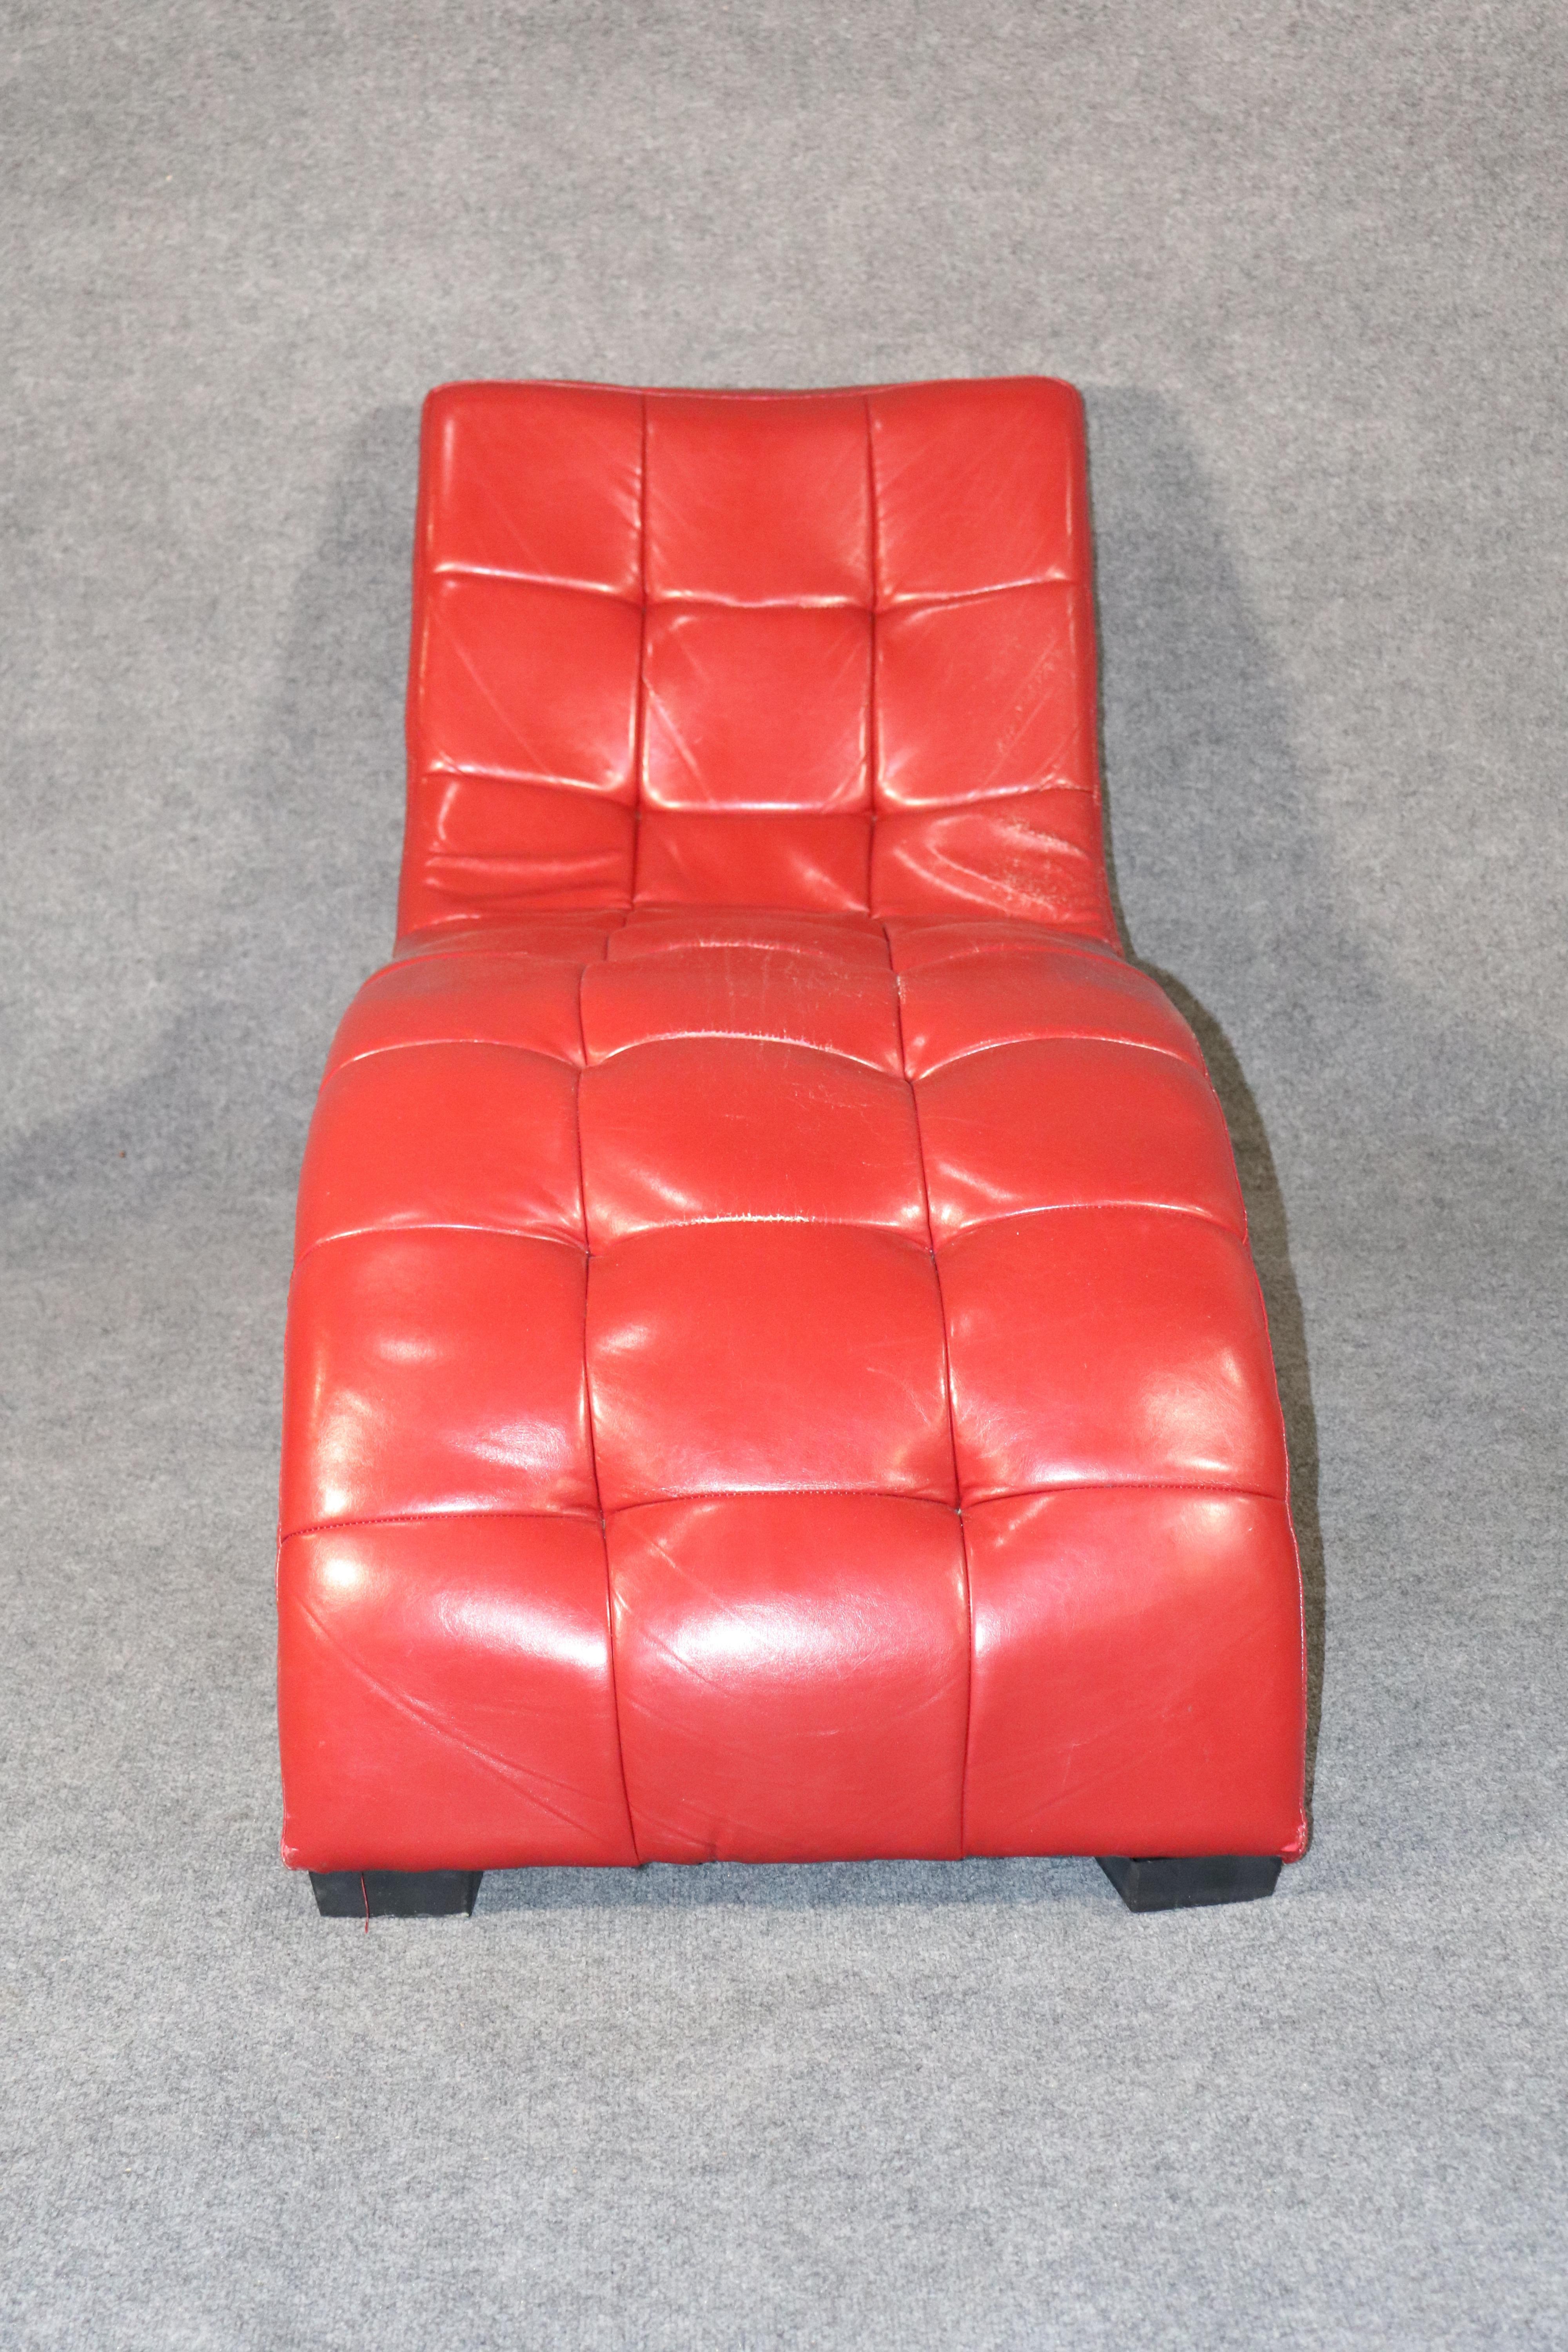 Chaiselongue-Sessel mit getufteter Lederpolsterung. Attraktives wellenförmiges Design mit Holzbeinen.
Bitte Standort bestätigen